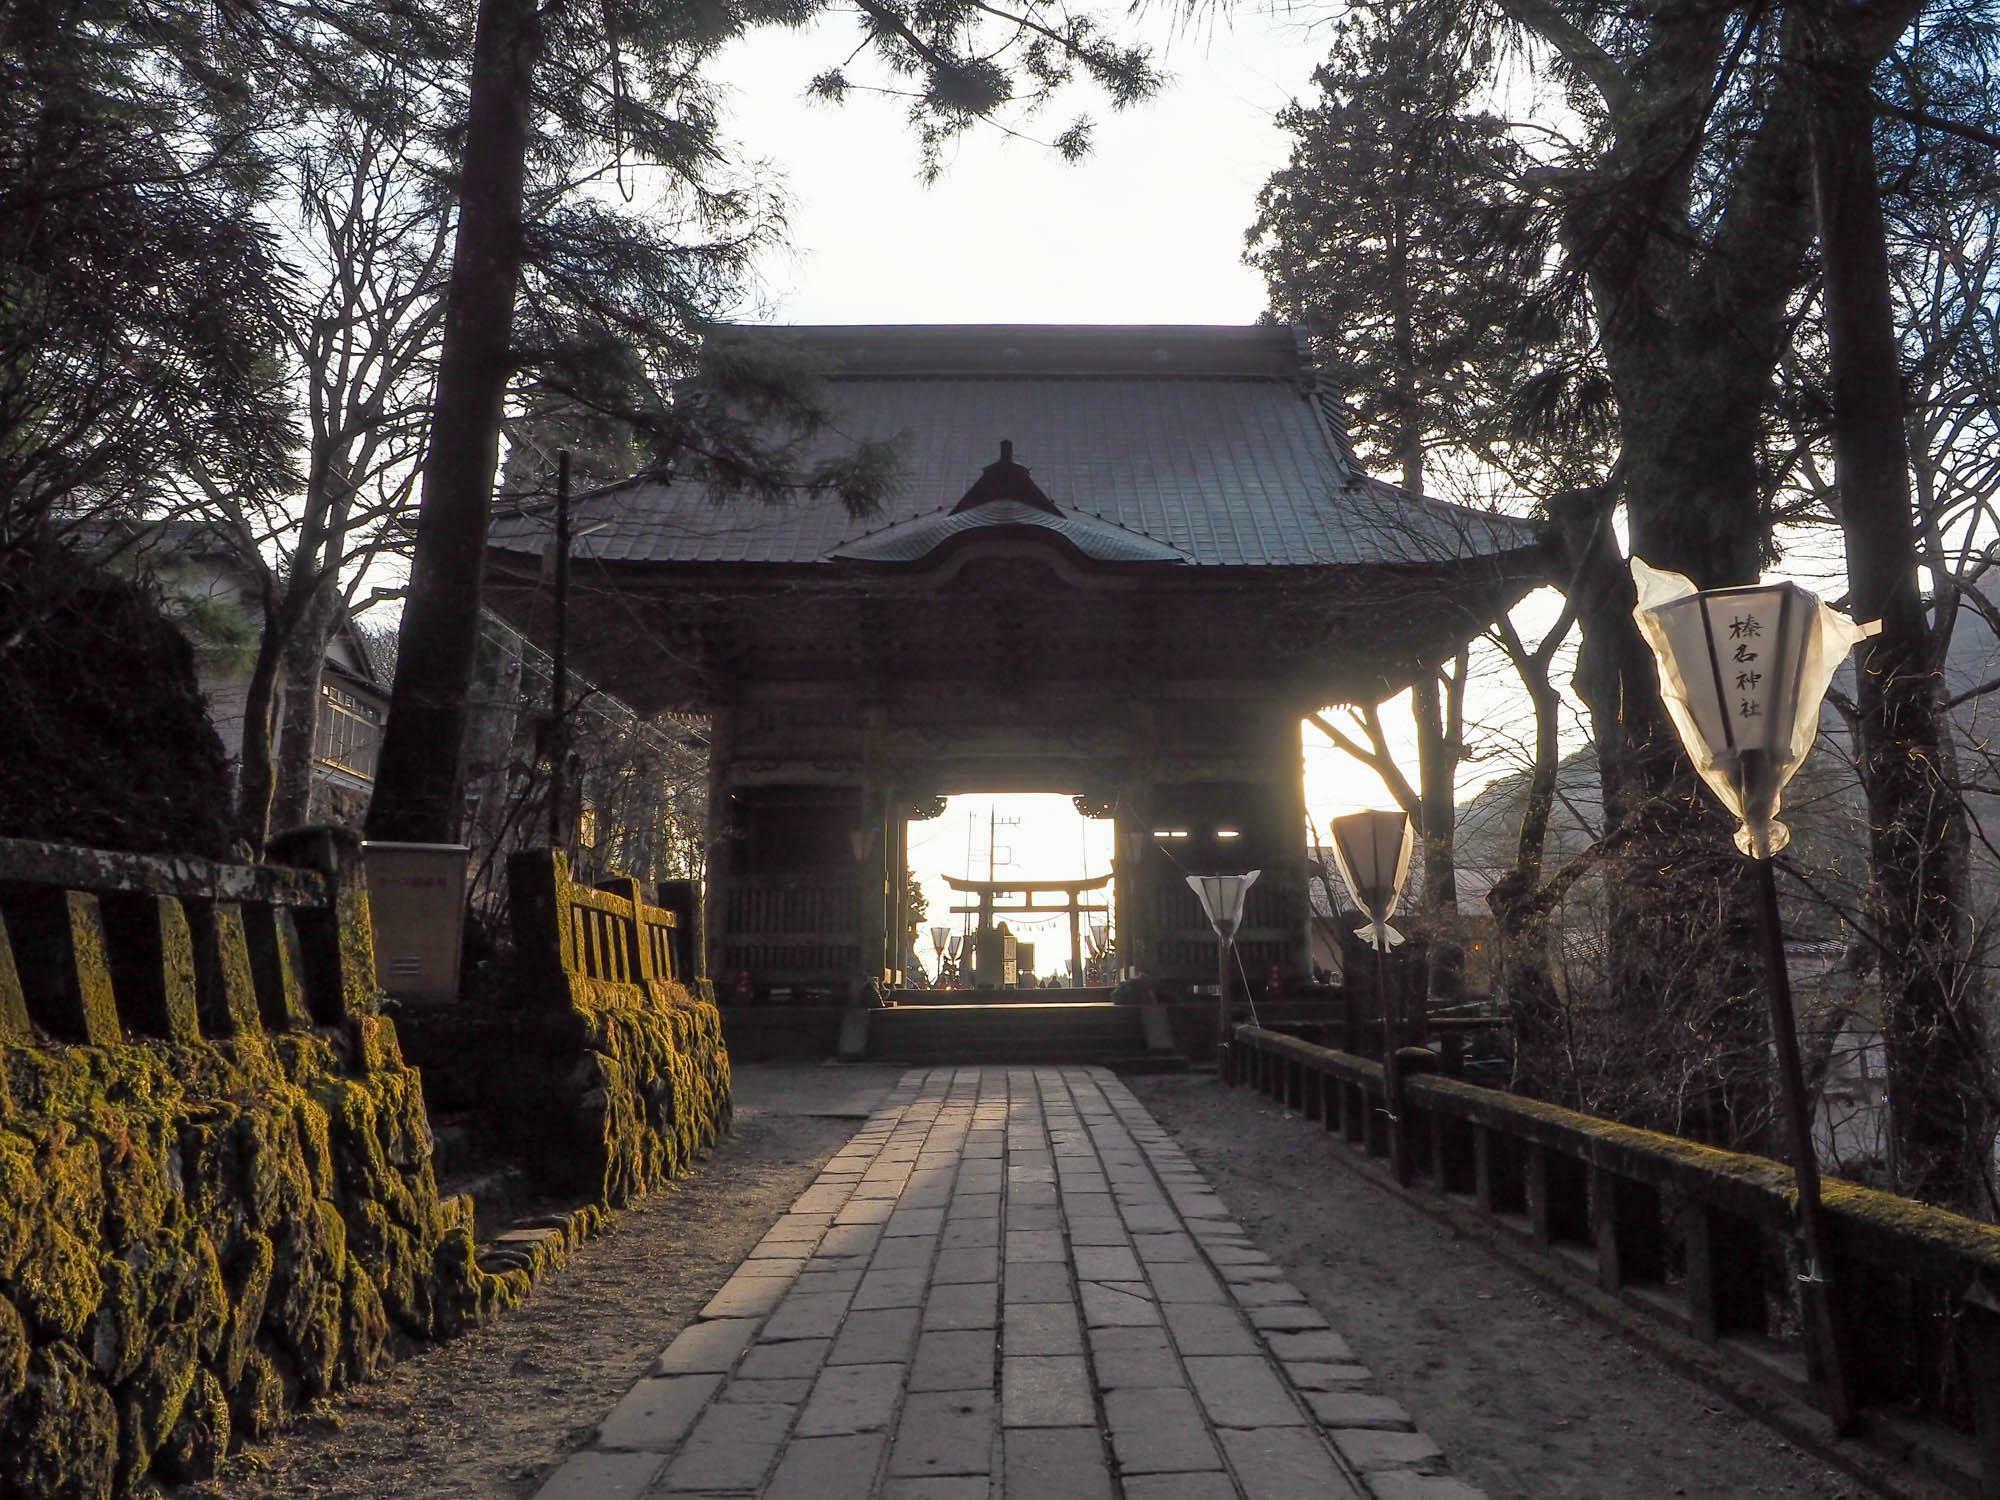 随神門から鳥居を望む。夕陽が射し込み神秘的な景観だ。